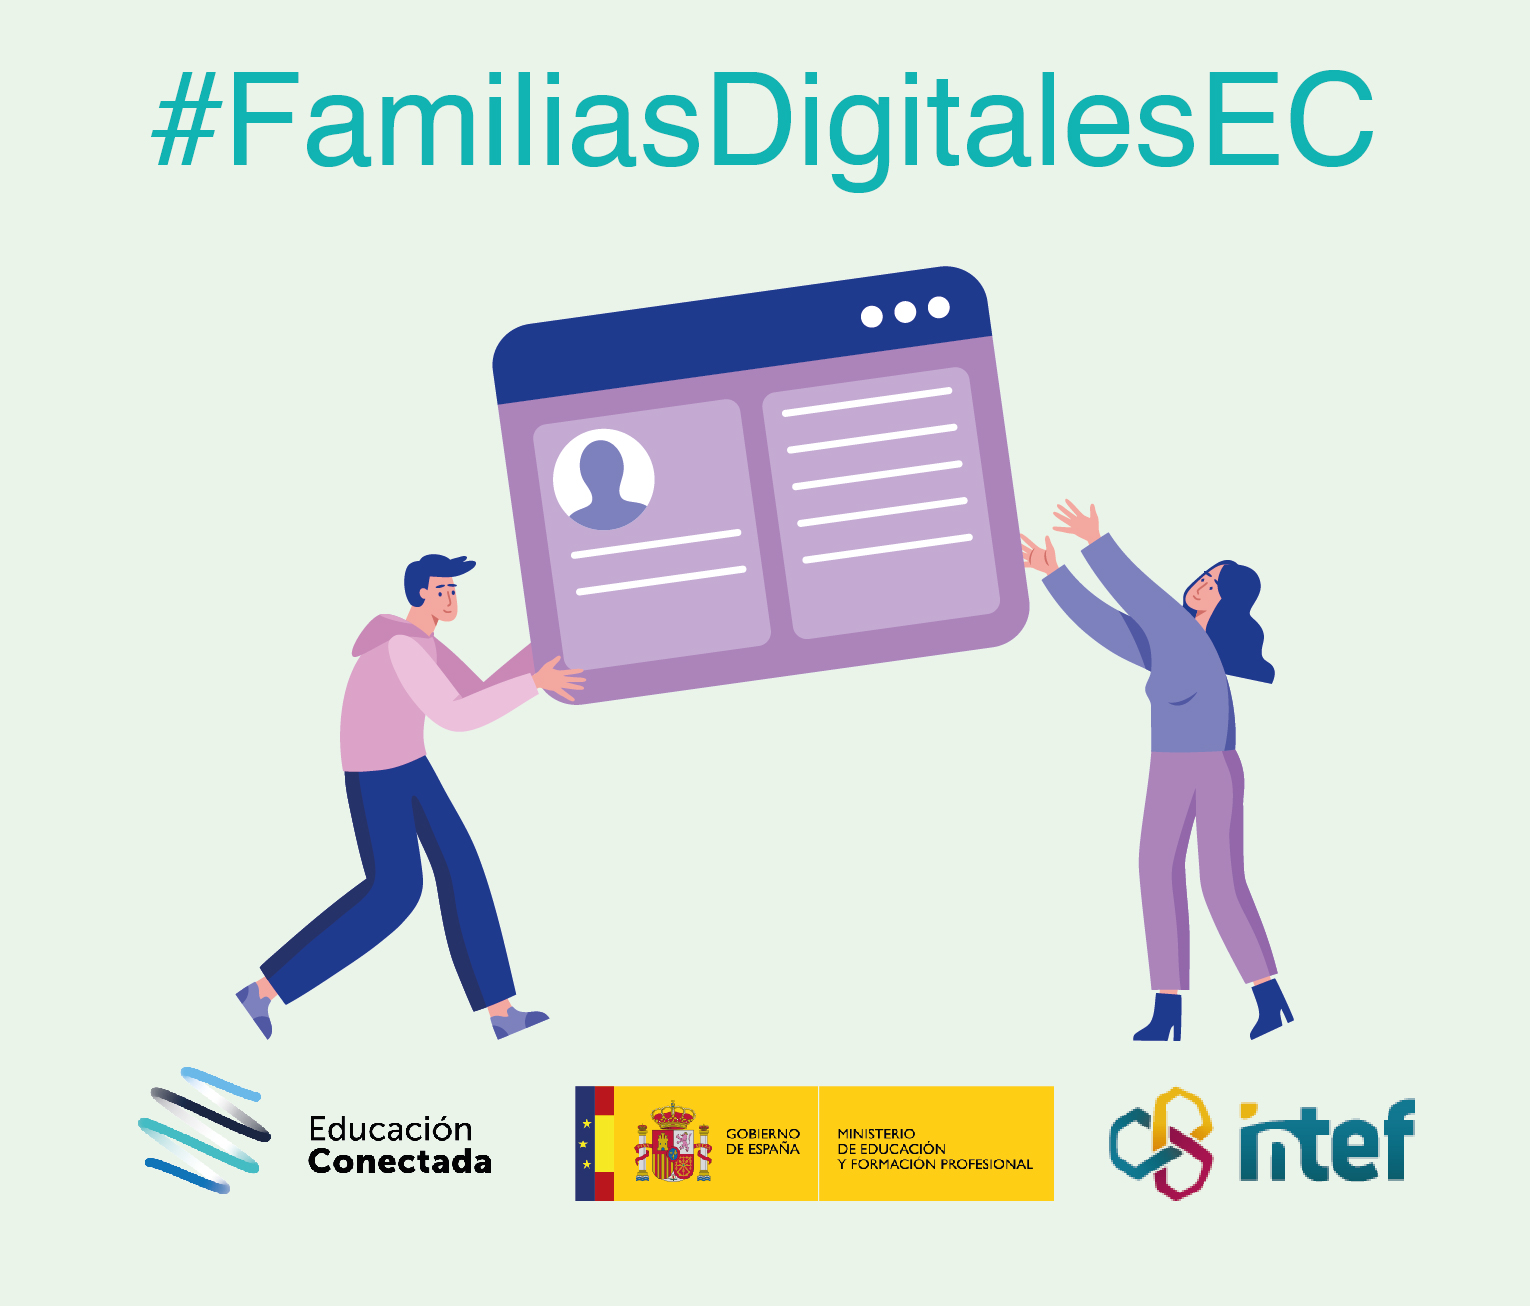 Competencias digitales en la familia: comunicación y colaboración online (avanzado) FamiliasDig6